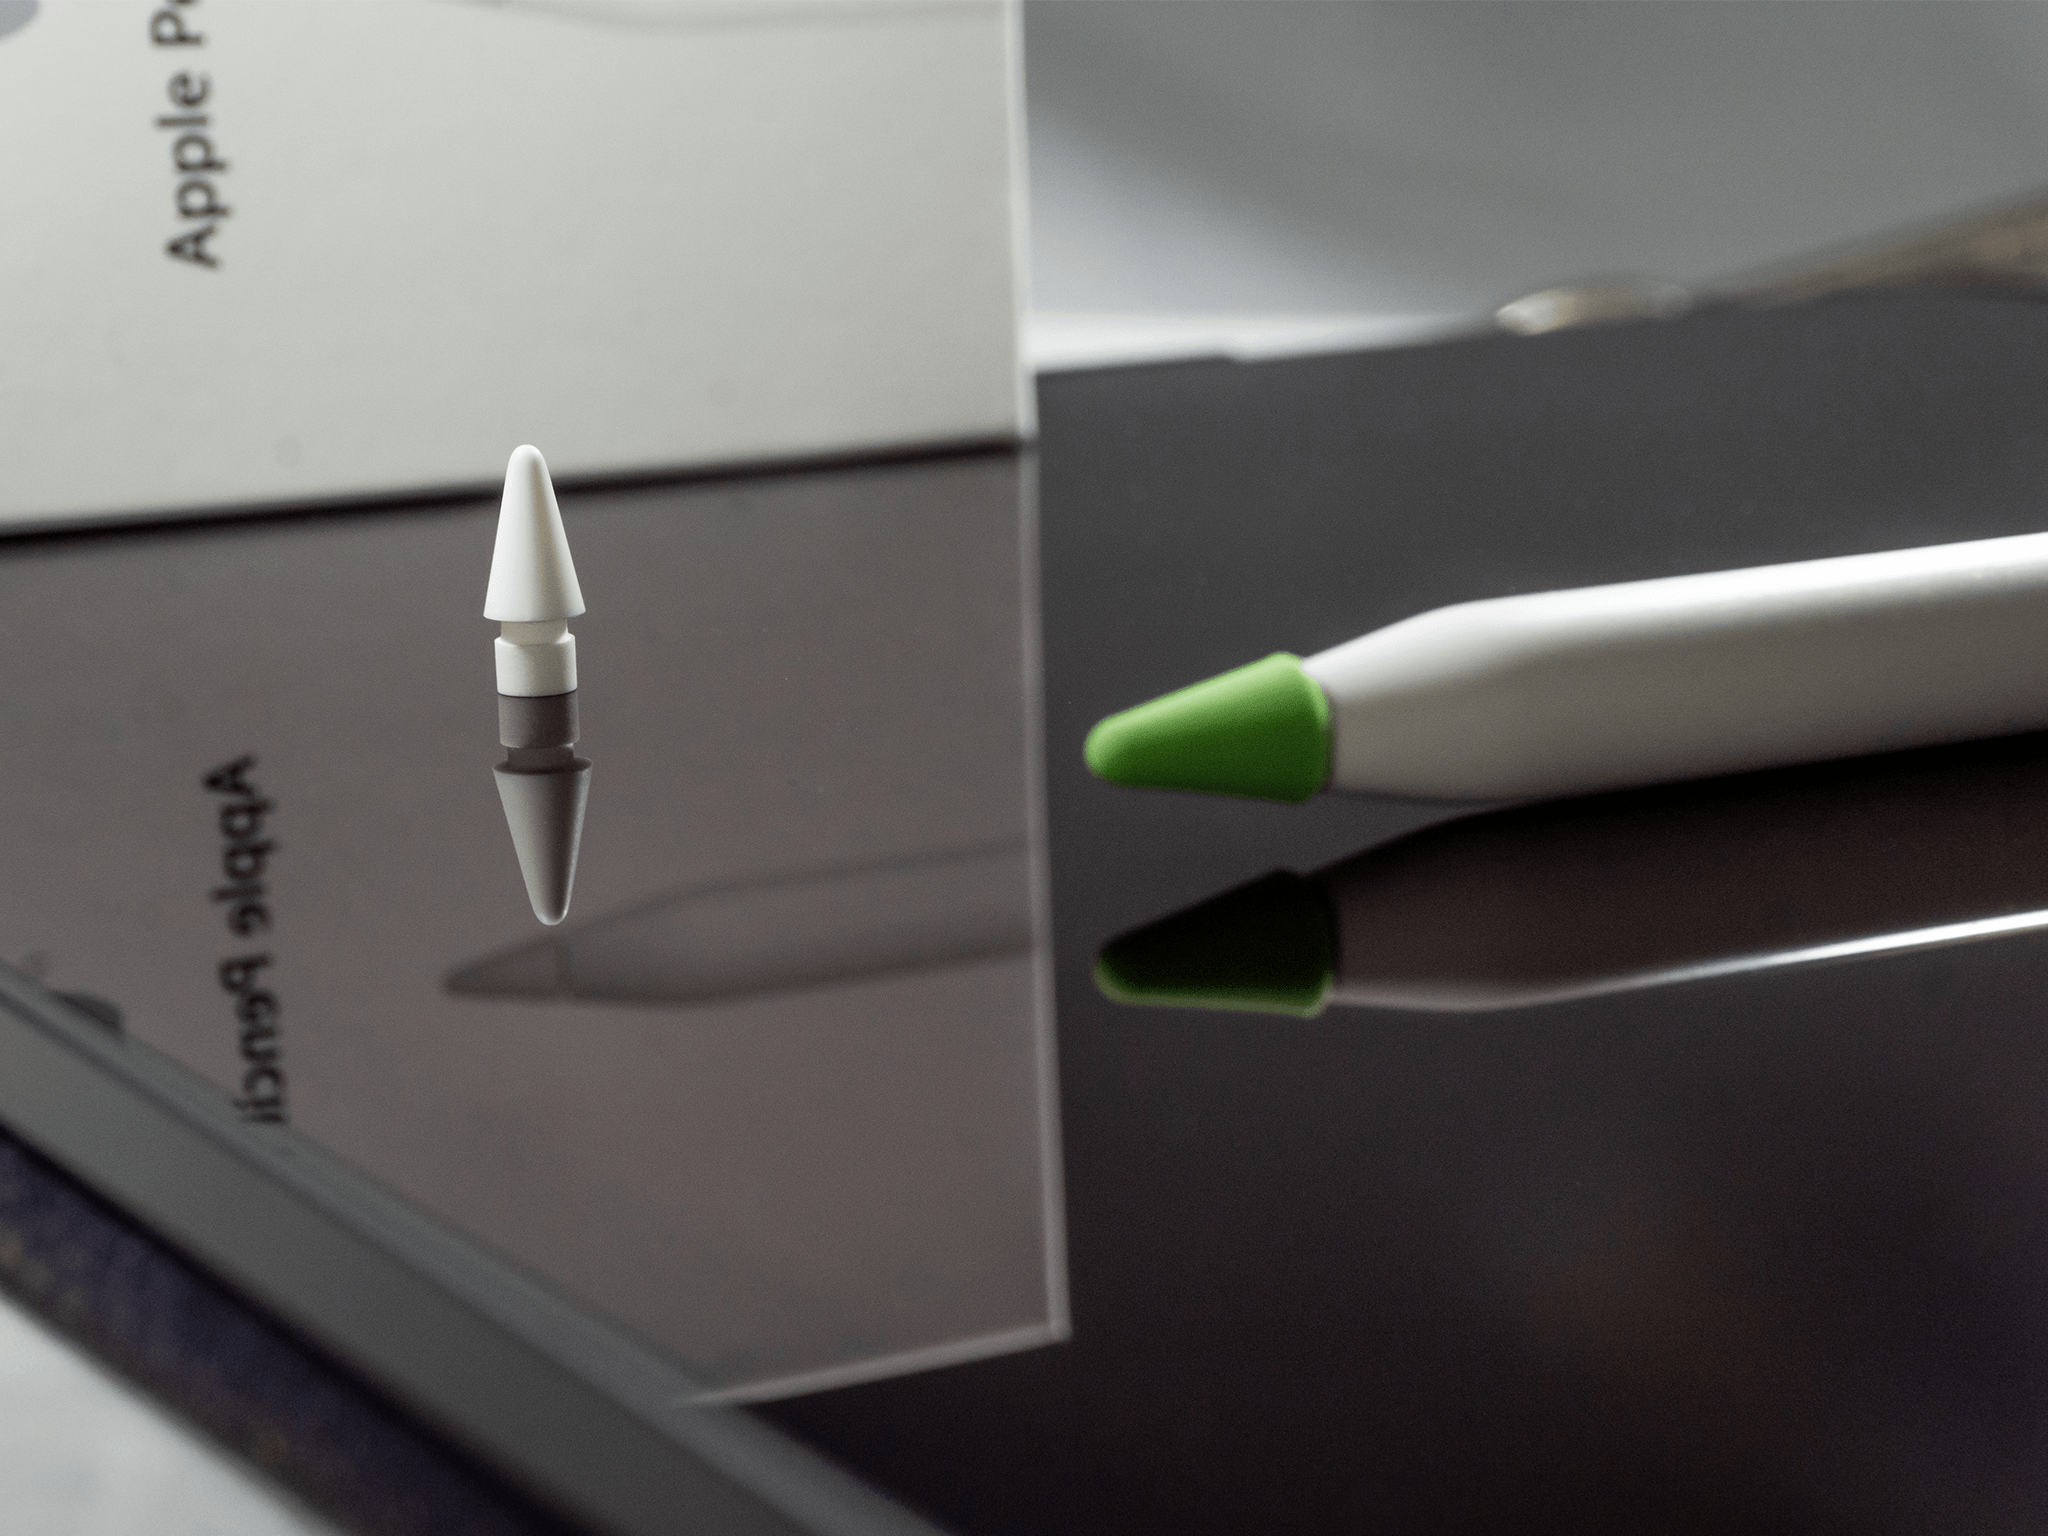 Apple Pencil vs Logitech Crayon: Which should you choose?